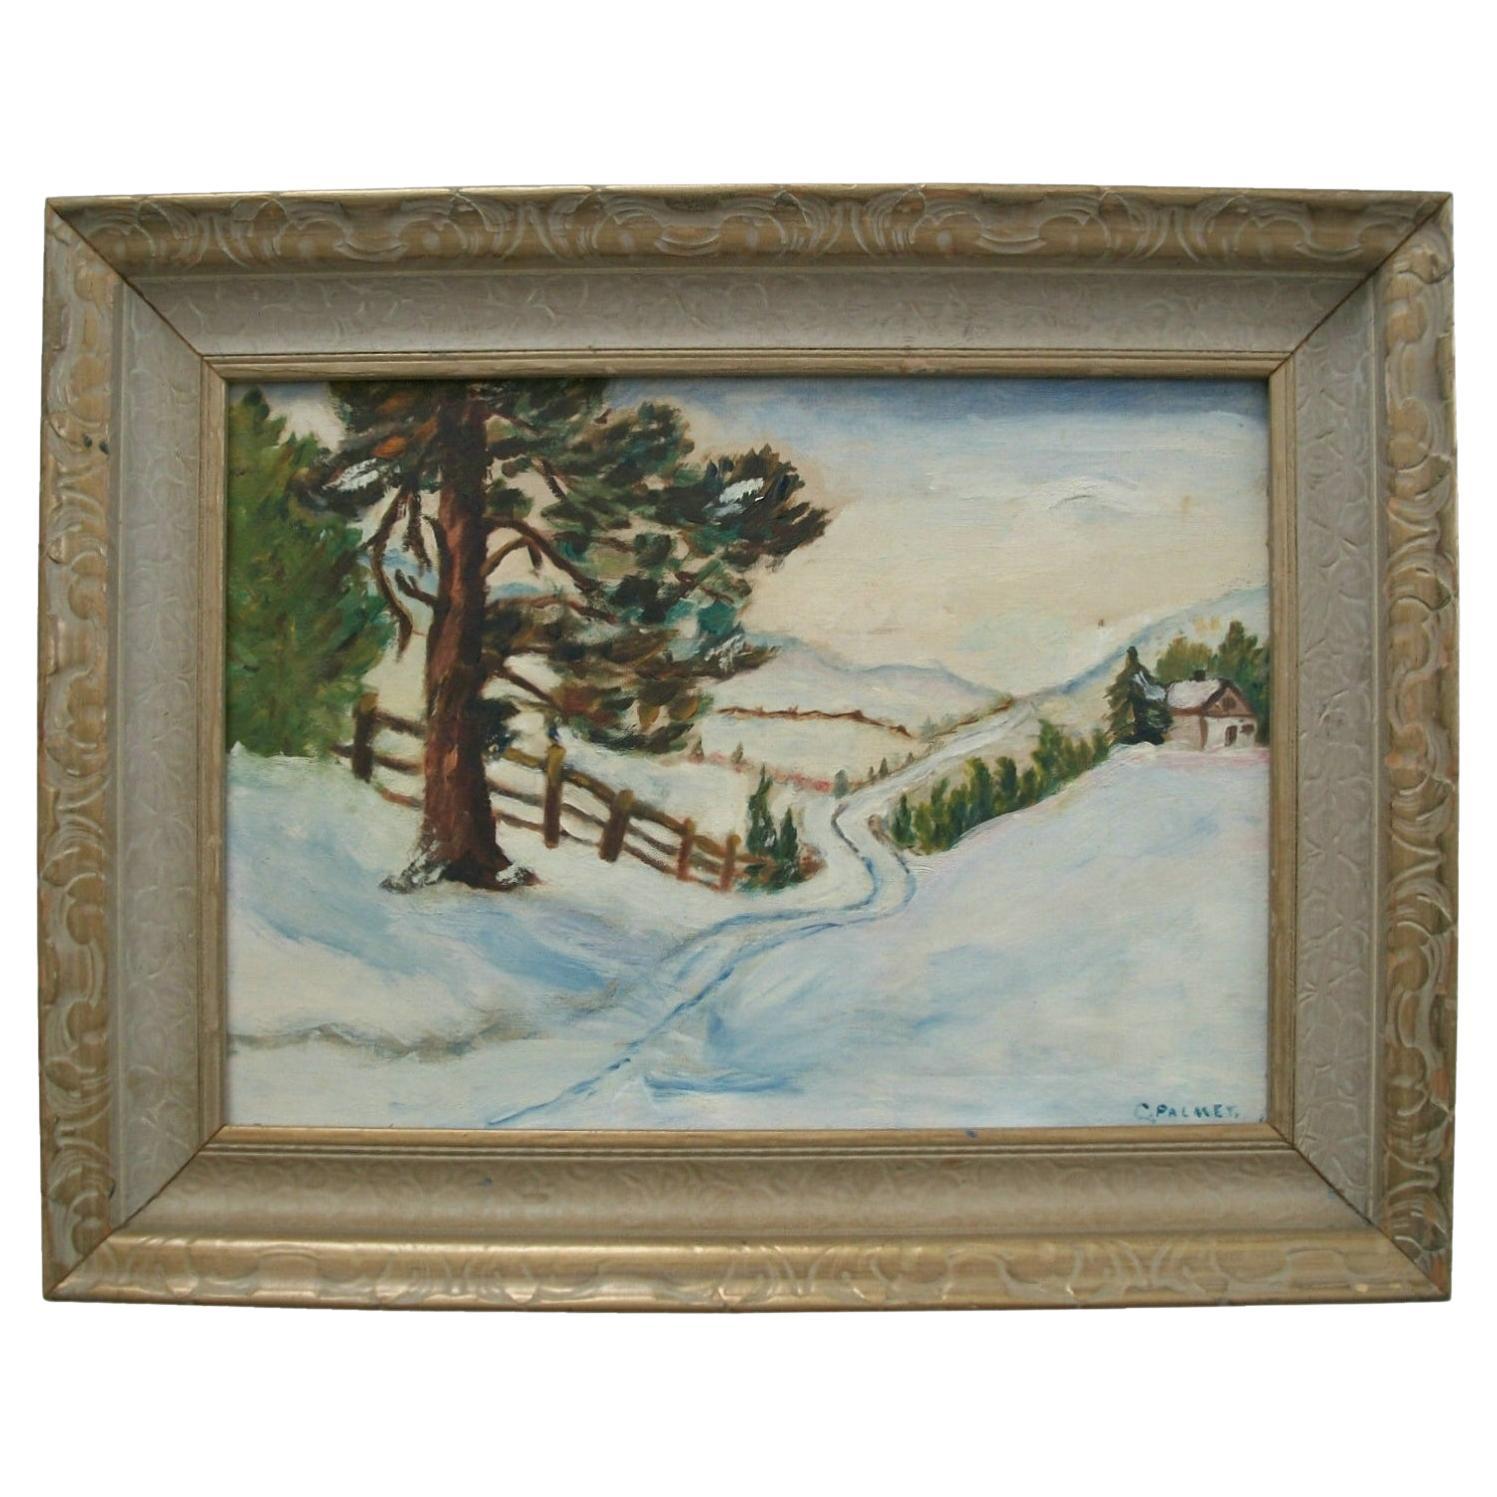 PALMER - Peinture de paysage d'hiver de style impressionniste - Canada - début du 20e siècle